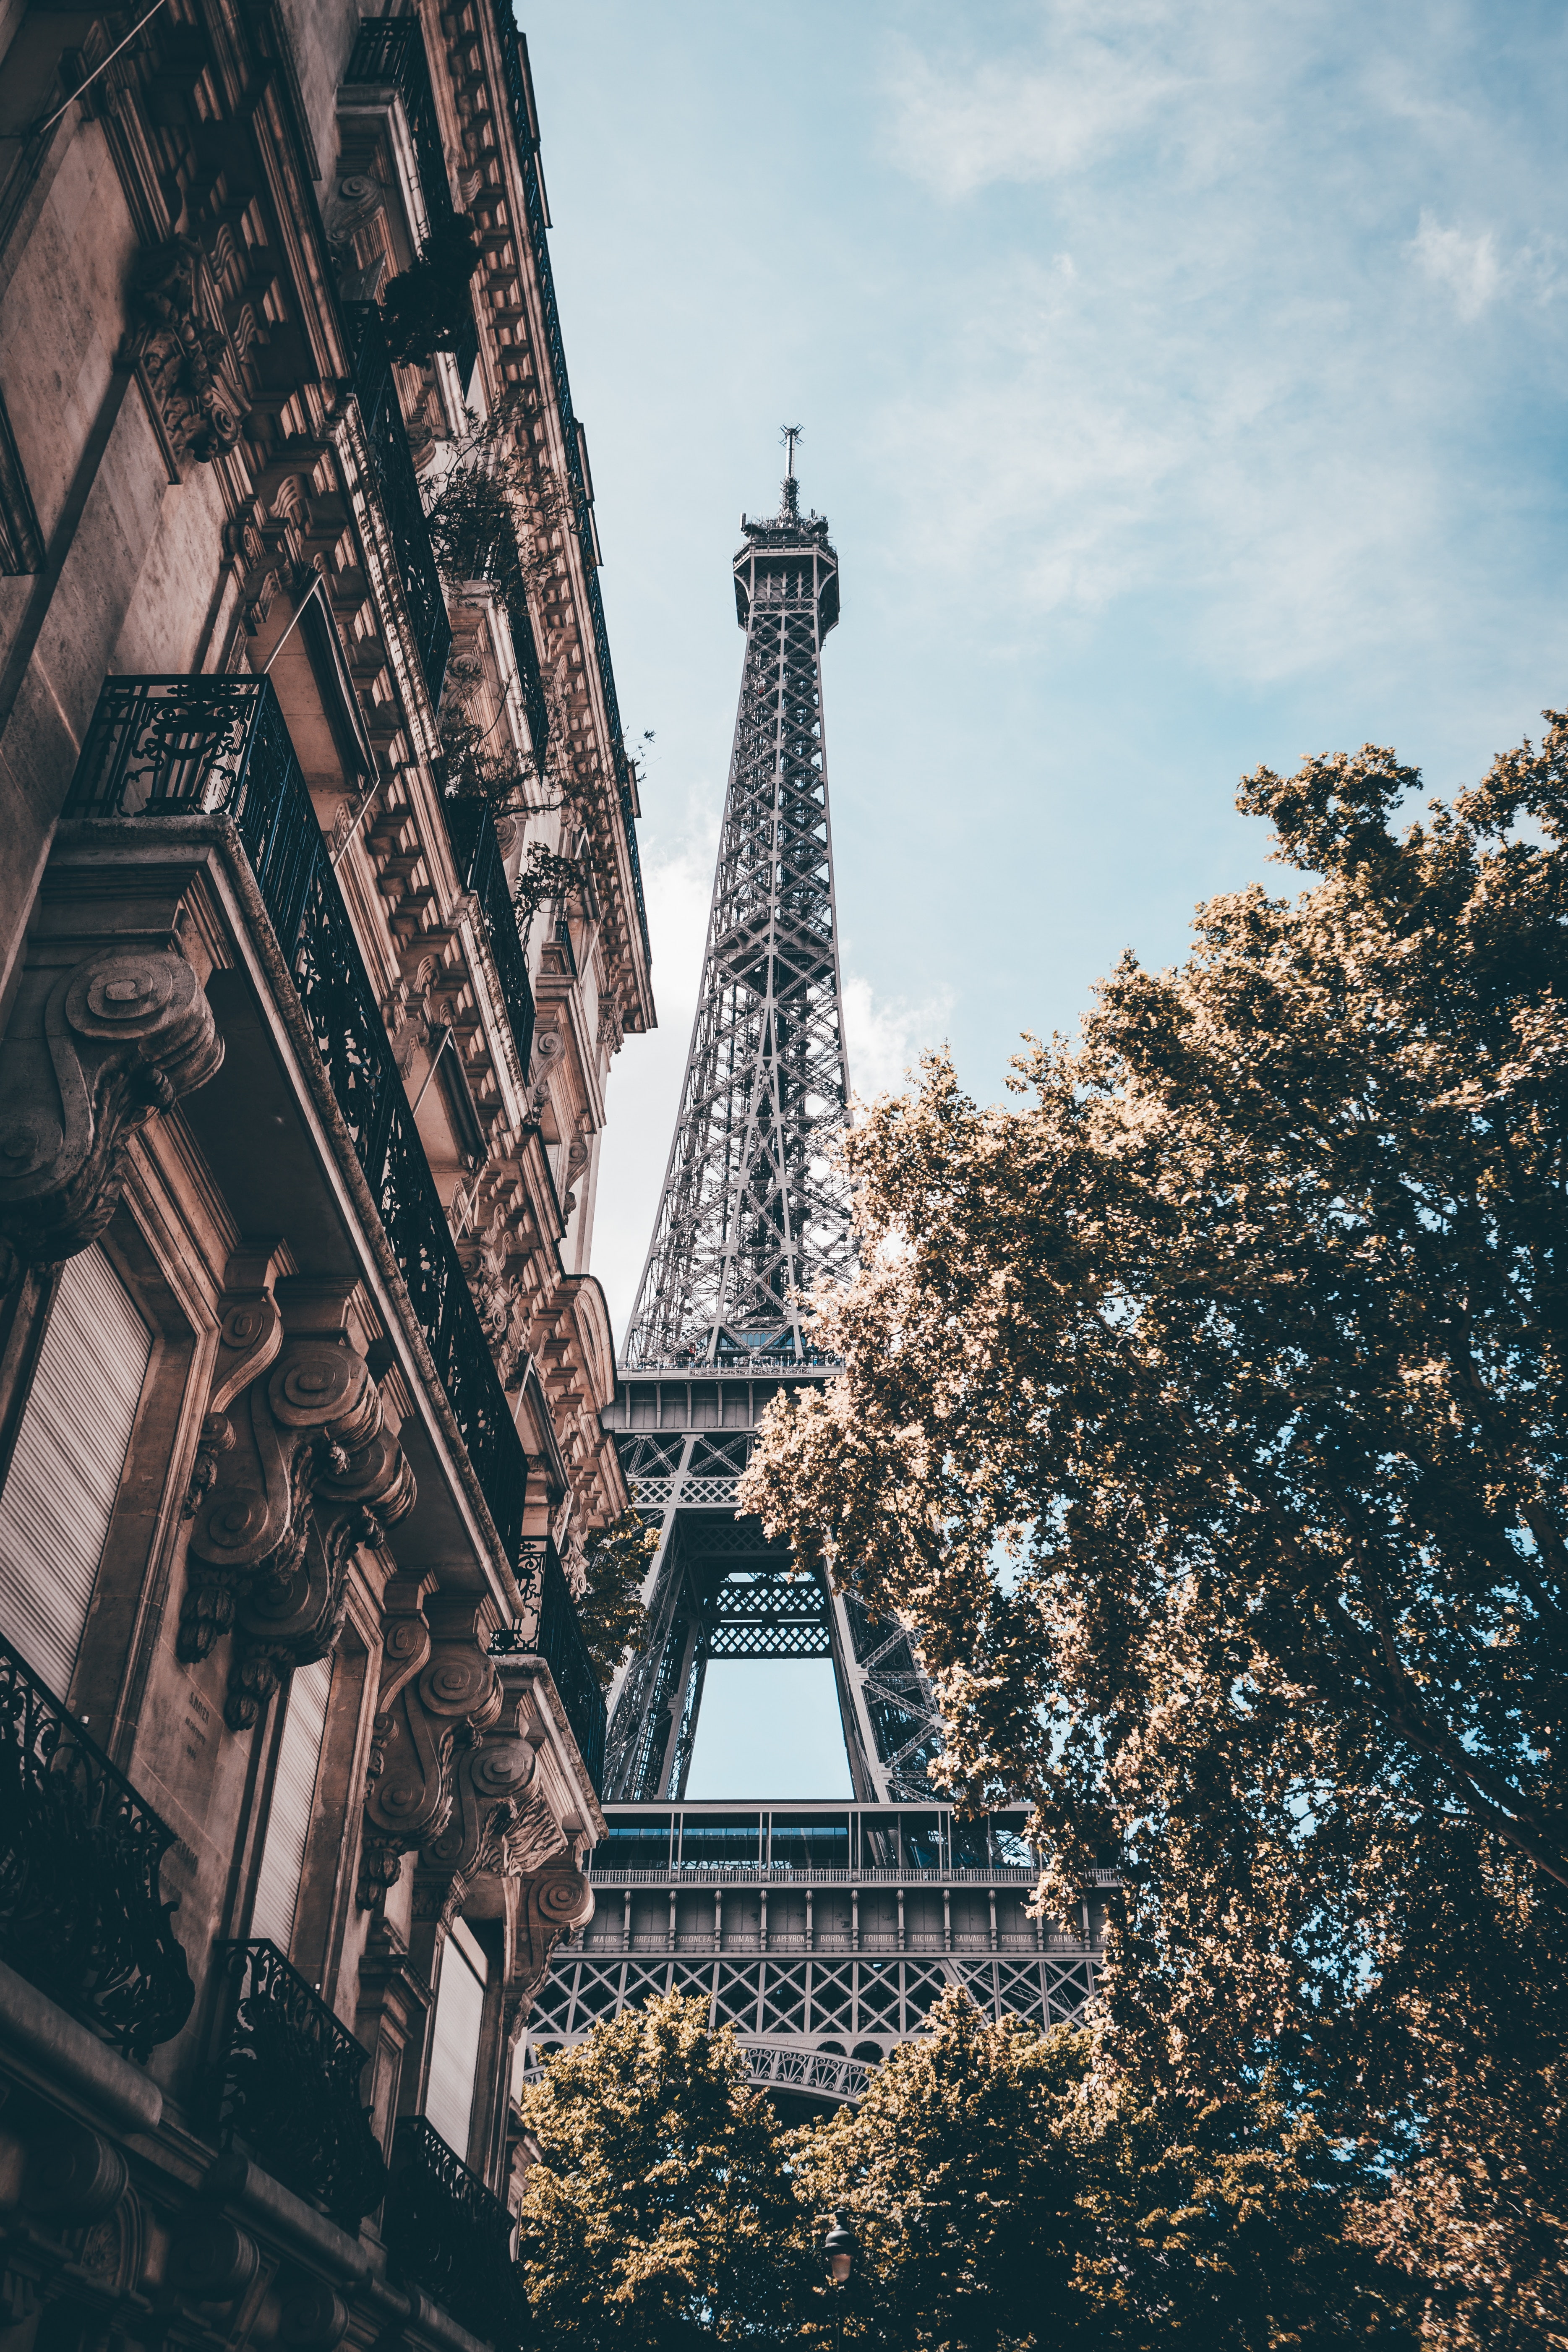 France, Alwin Kroon, Paris, Eiffel Tower, architecture, built structure